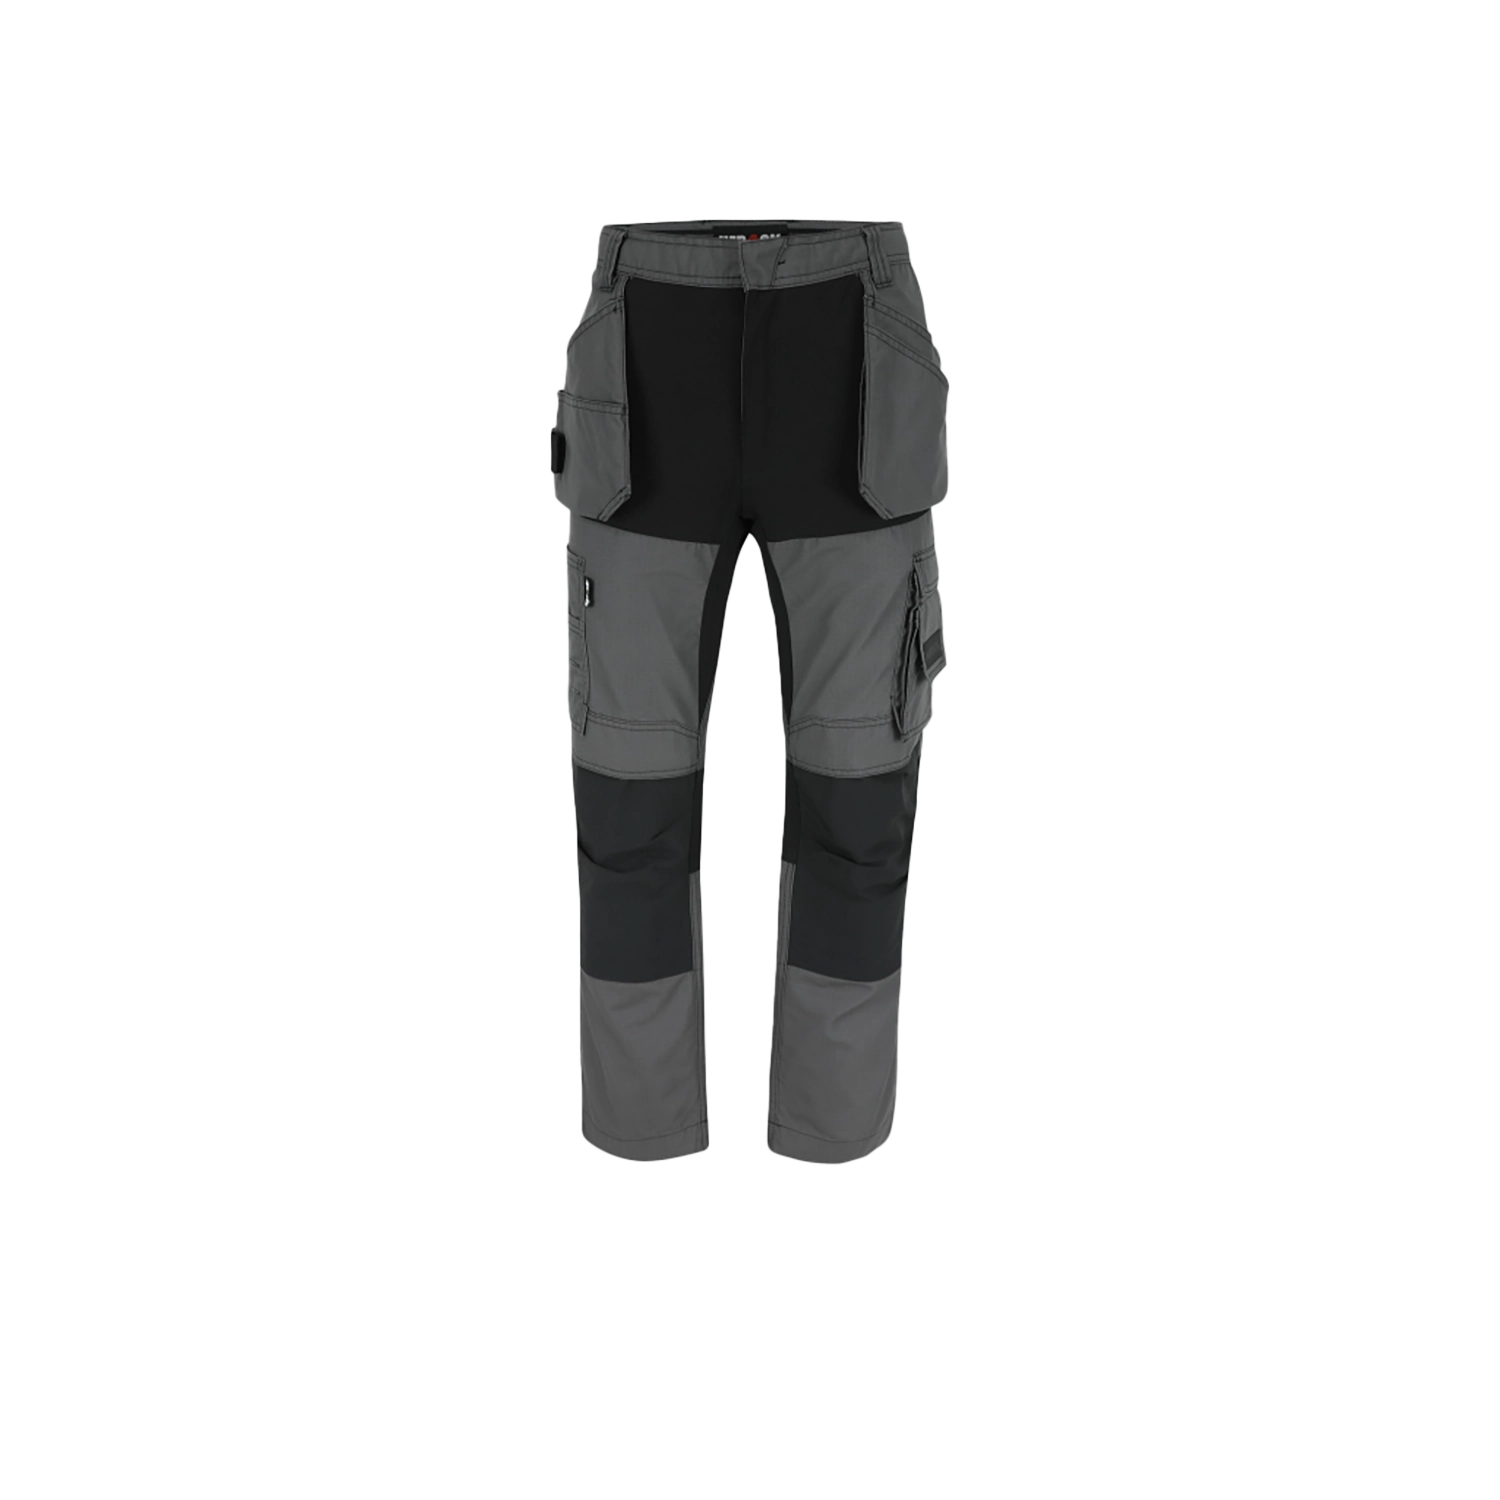 Pantalon de travail Spector - anthracite/noir - taille 40